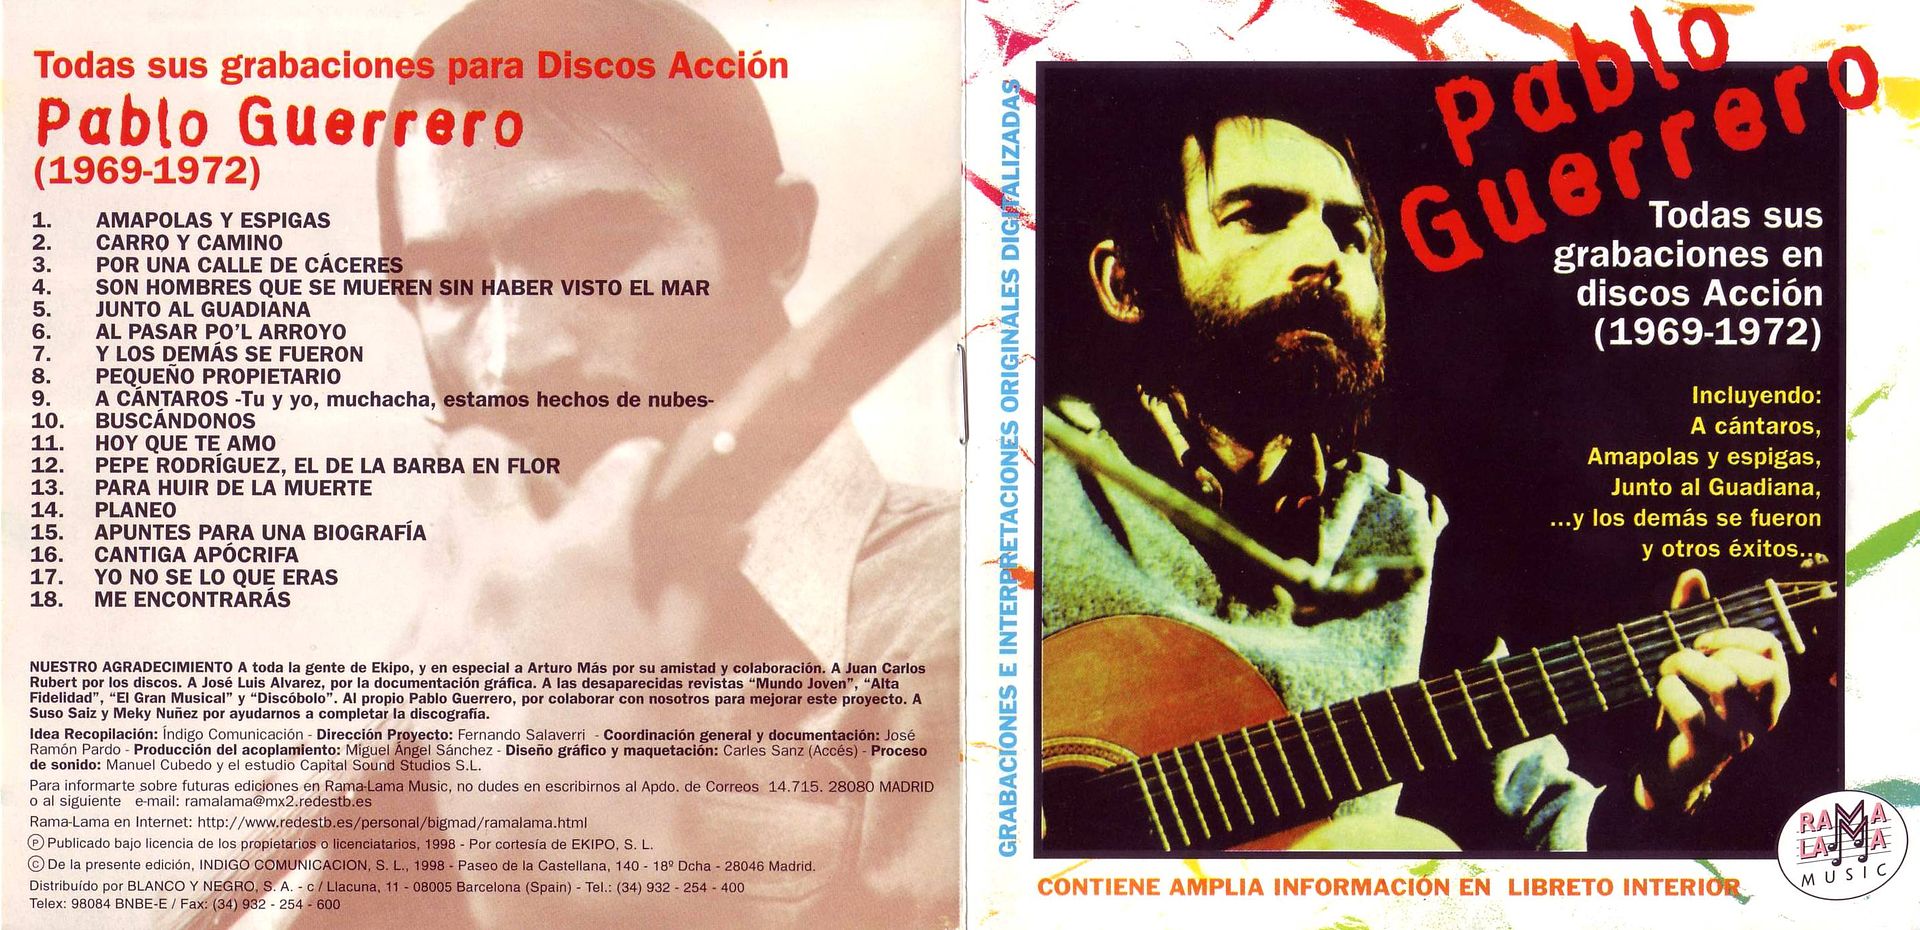 todas cuadernillo2001 - Pablo Guerrero - Todas sus grabaciones para discos Accion (1969-1972)